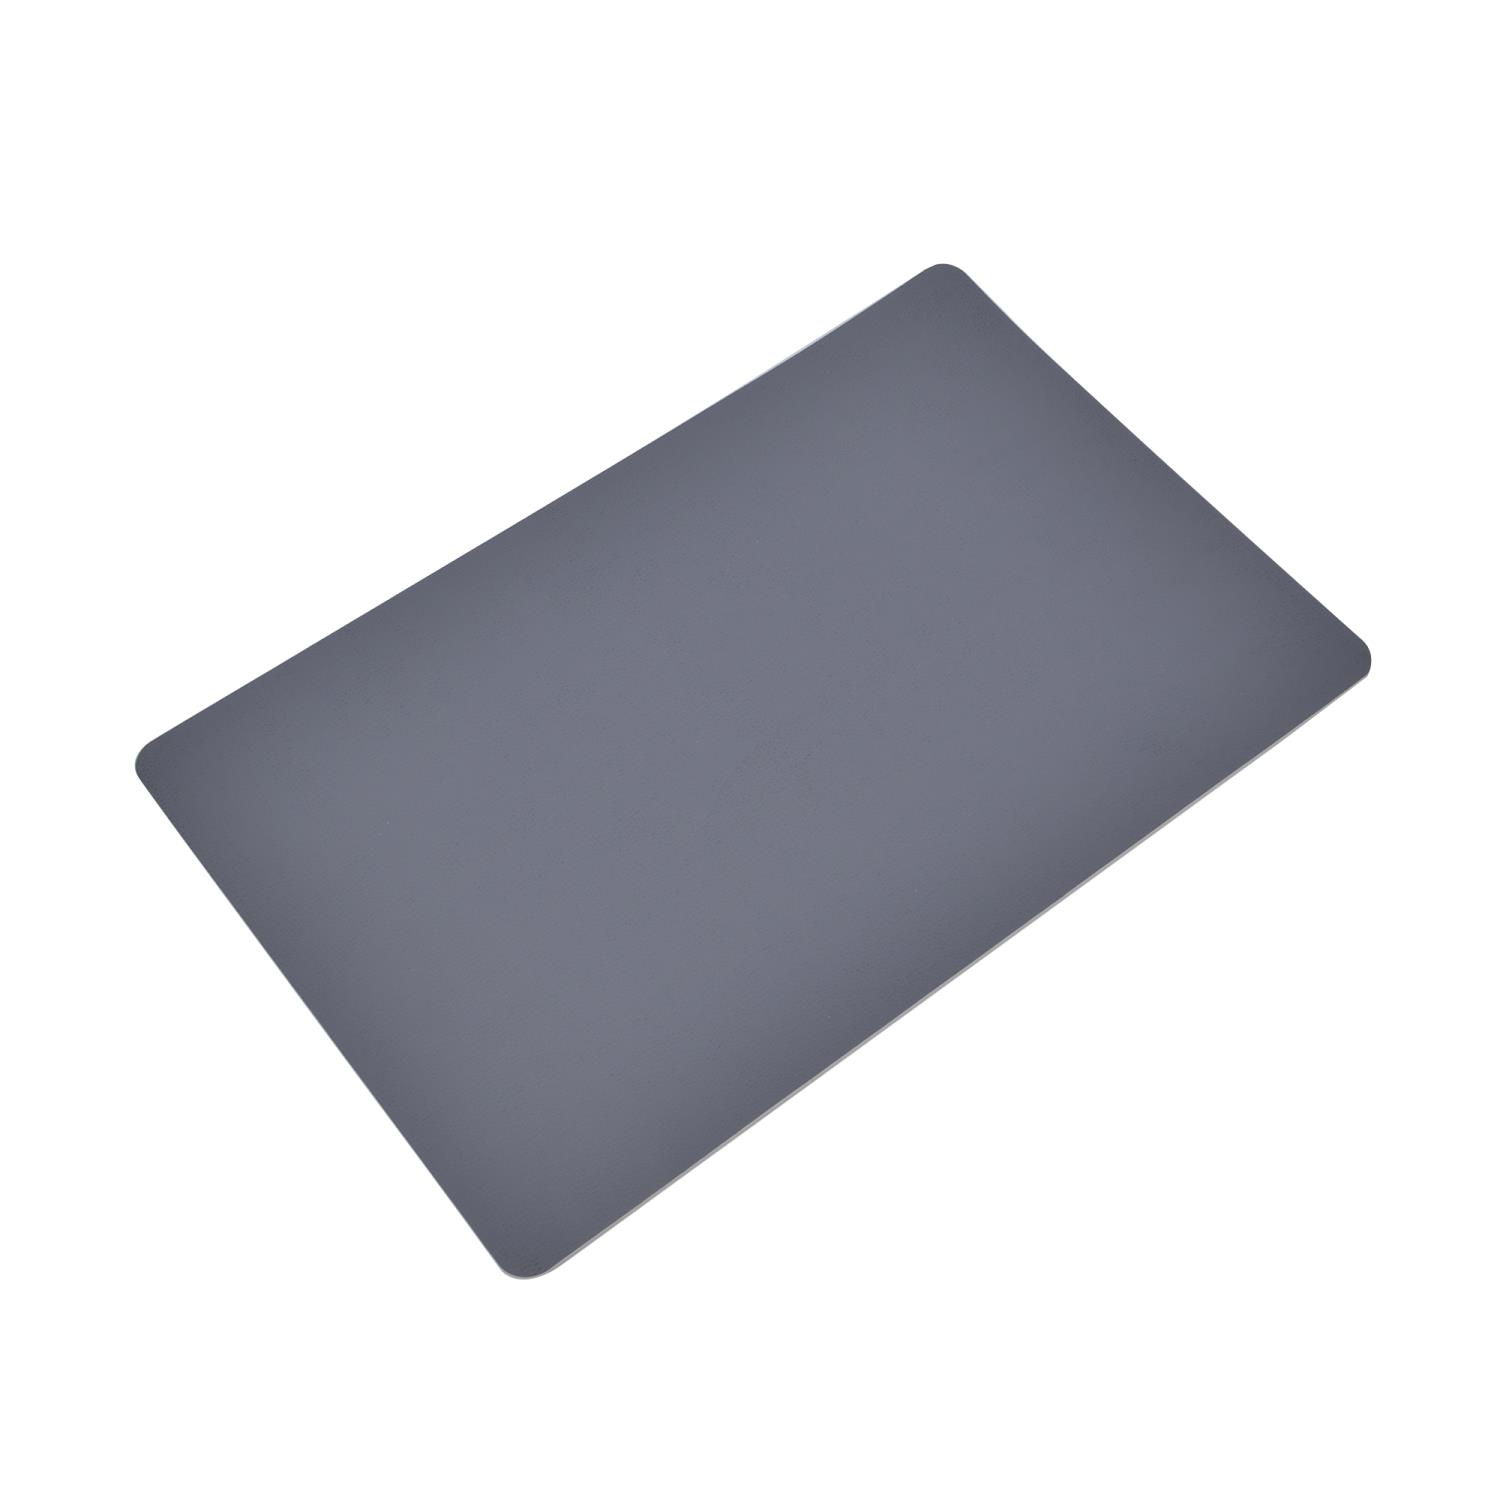 Spisebrikke West mørk grå 43,5x28,5 cm